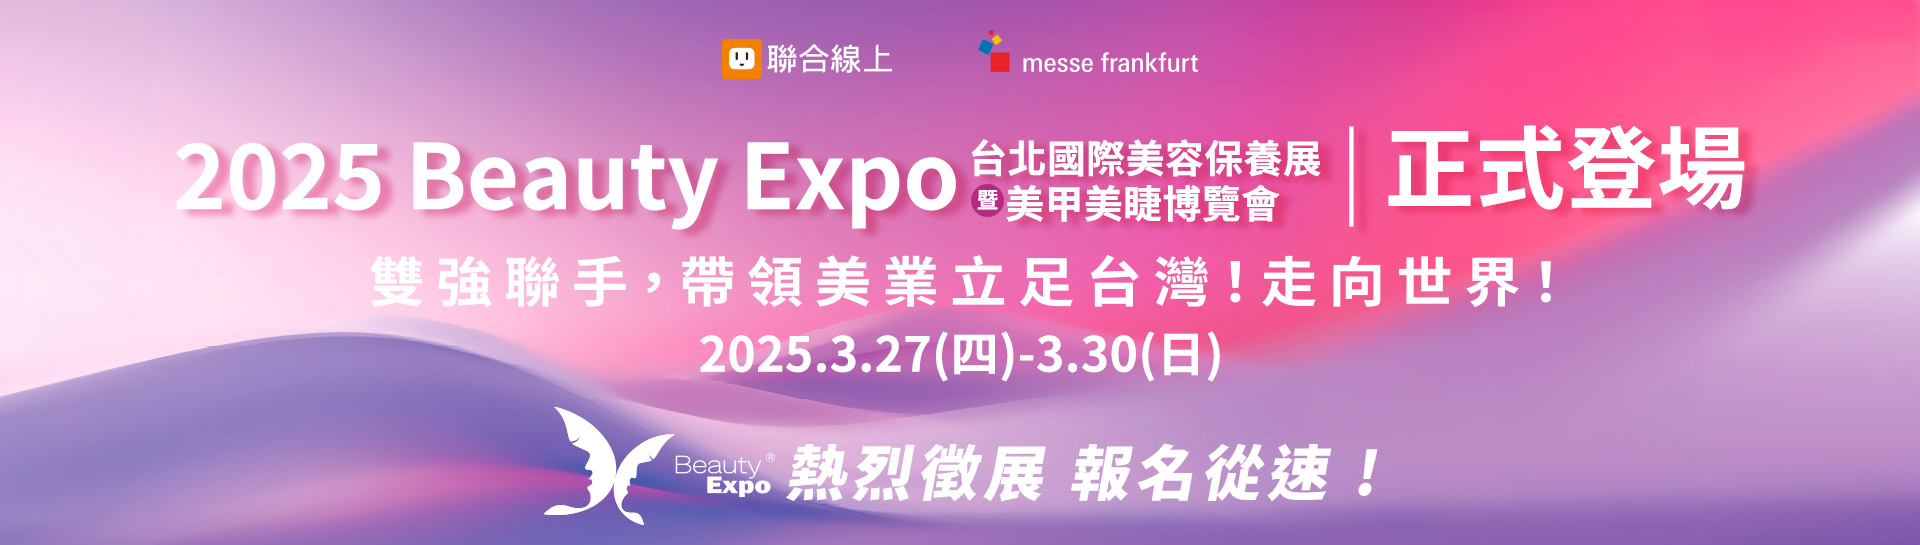 2025 Beauty Expo 台北國際美容保養展暨美甲美睫博覽會